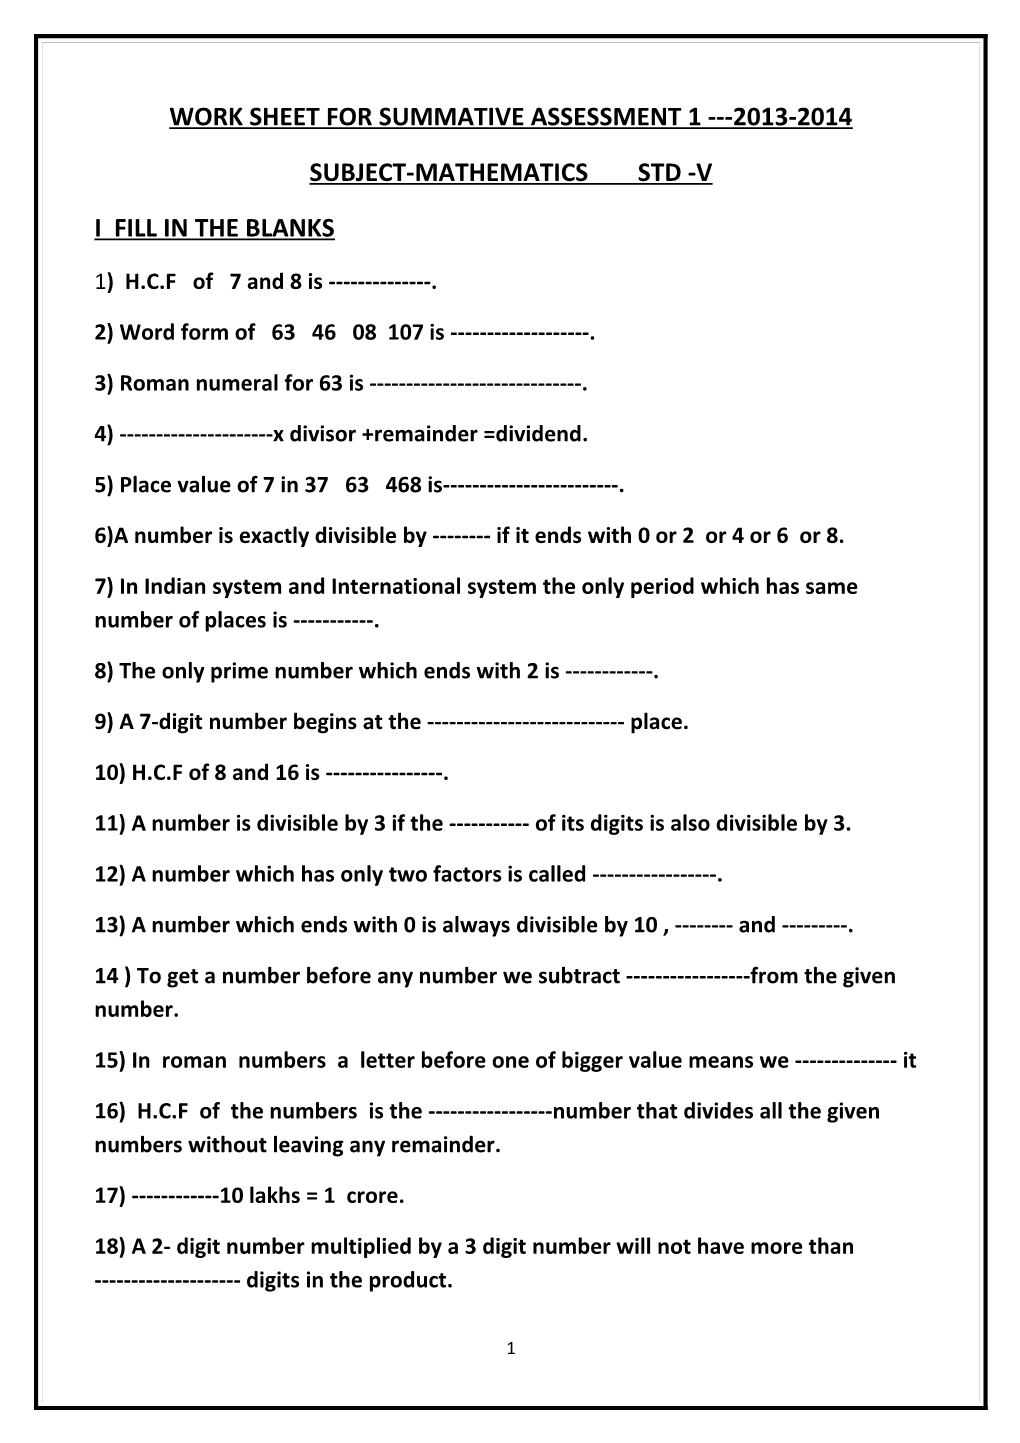 Work Sheet for Summative Assessment 1 2013-2014